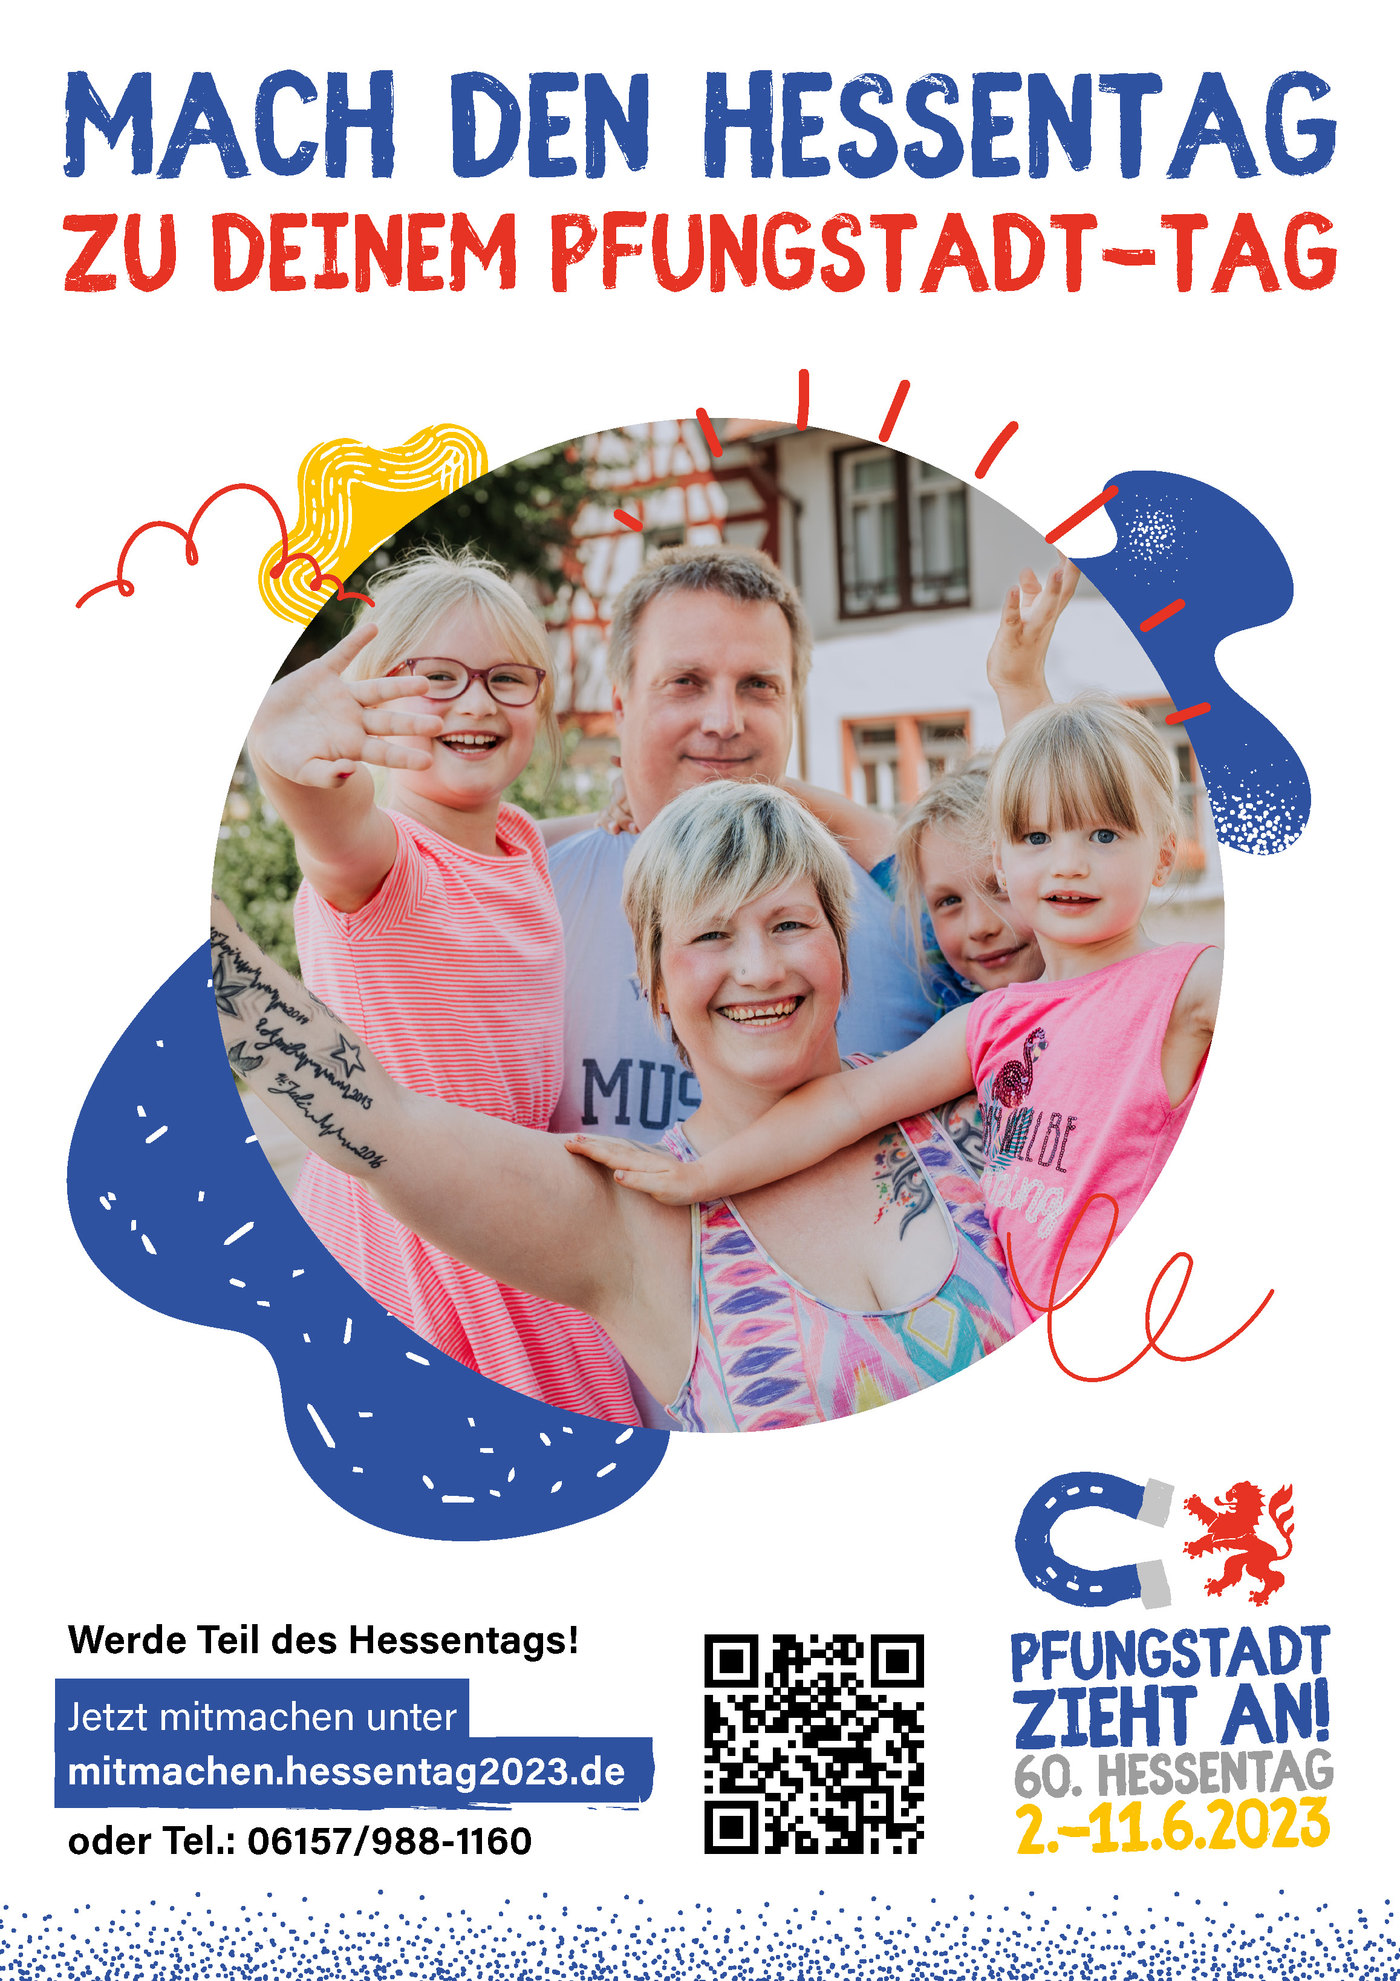 Kampagnenfoto für den Hessentag 2023 in Pfungstadt